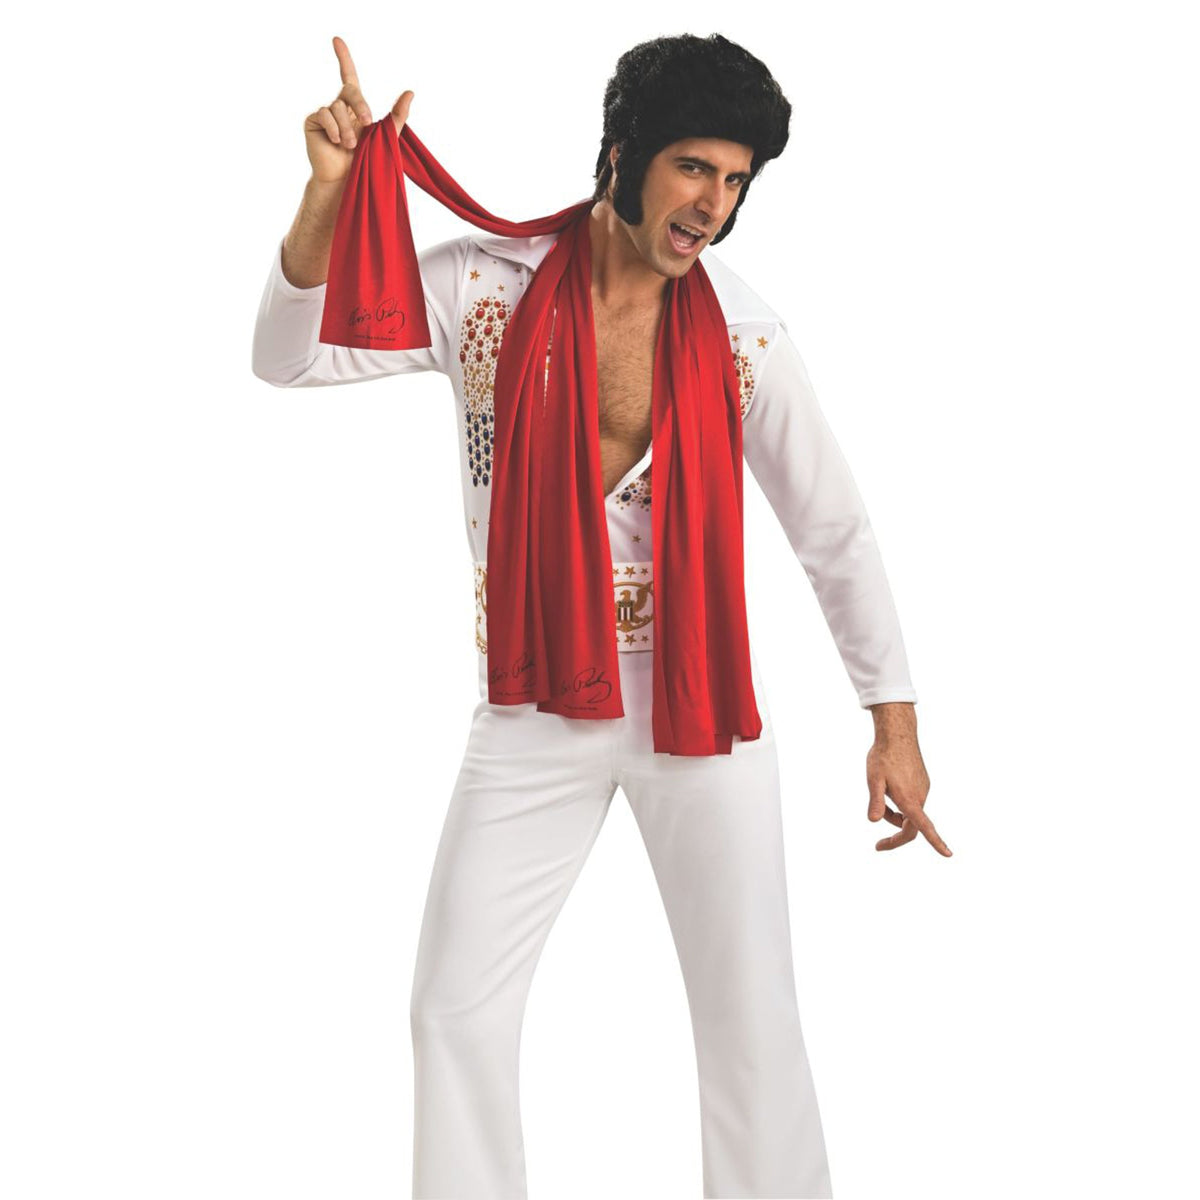 RUBIES II (Ruby Slipper Sales) Costume Accessories Elvis Presley Scarves, 3 Count 082686087827